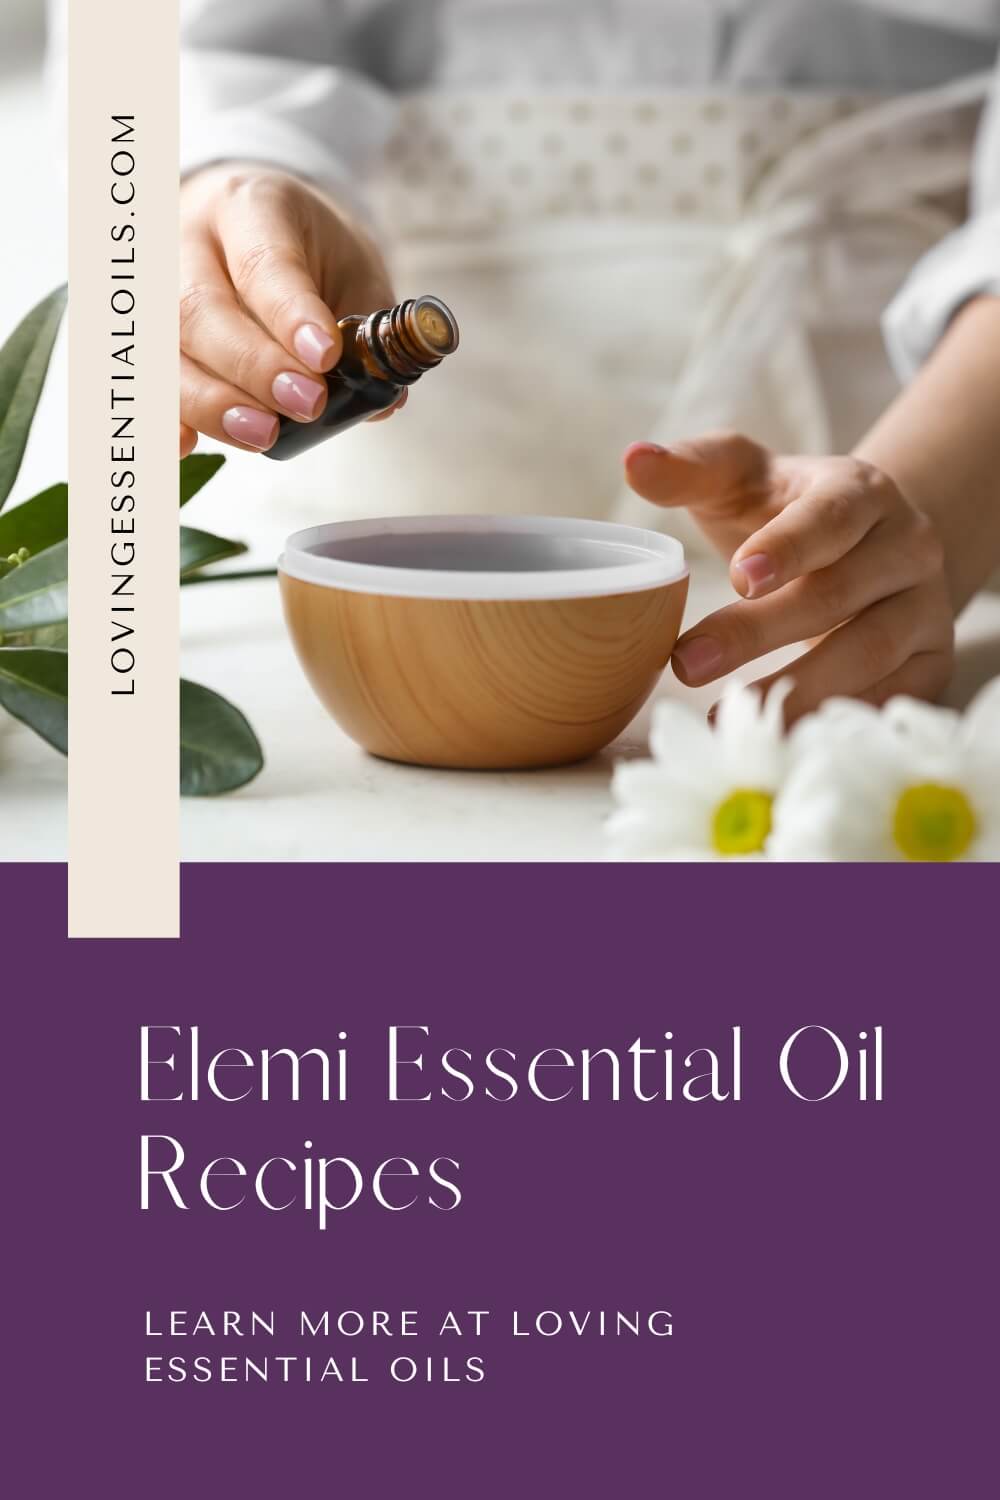 DIY Elemi Essential Oil Recipes by Loving Essential Oils